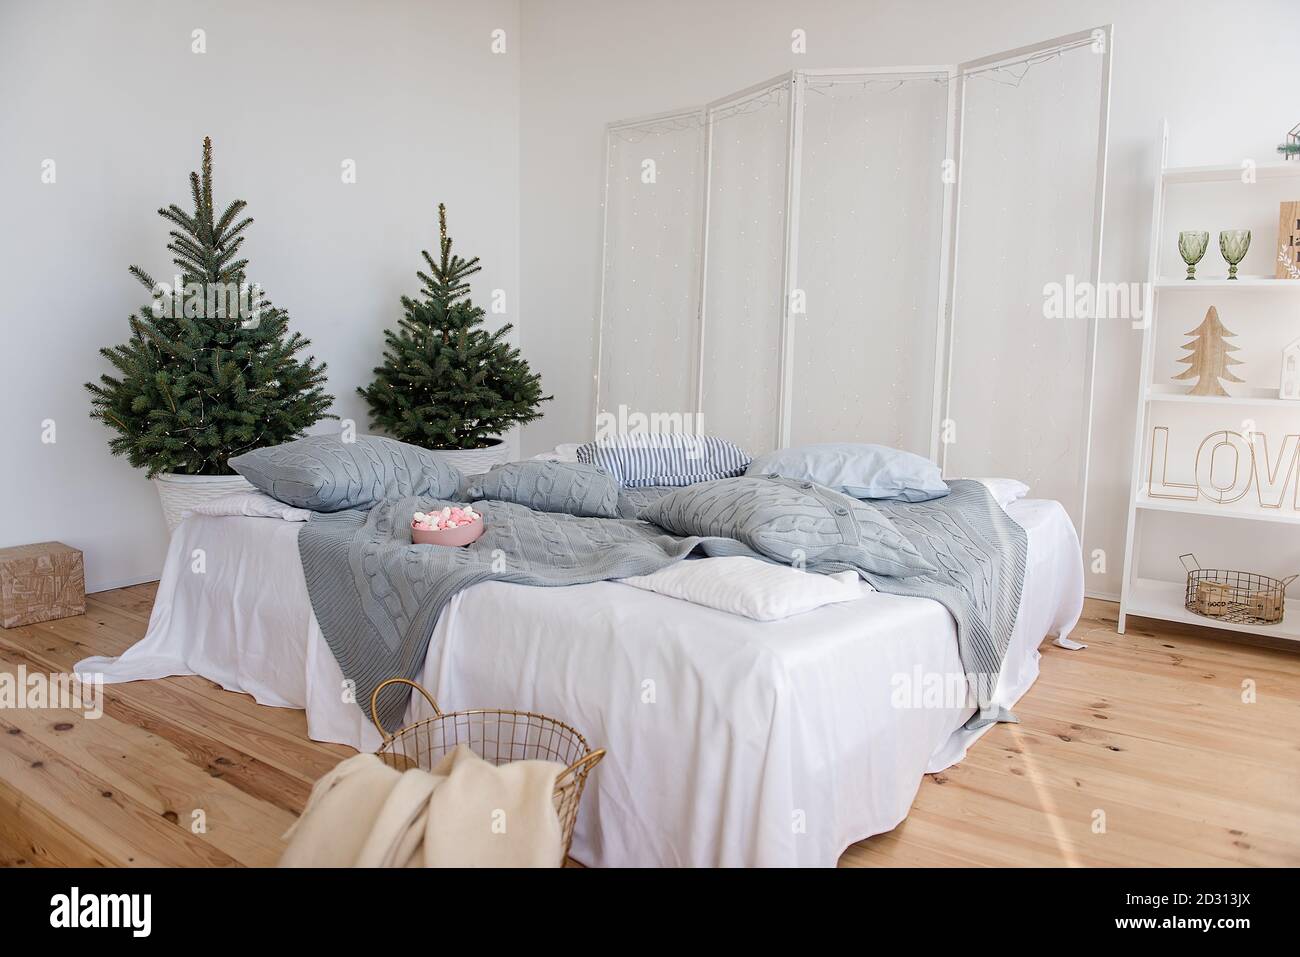 Chambre blanche élégante, minimalisme, style scandinave. Draps blancs, tissu écossais gris tricoté, oreillers. Parquet. Il y a des arbres de Noël avec guirlande Banque D'Images